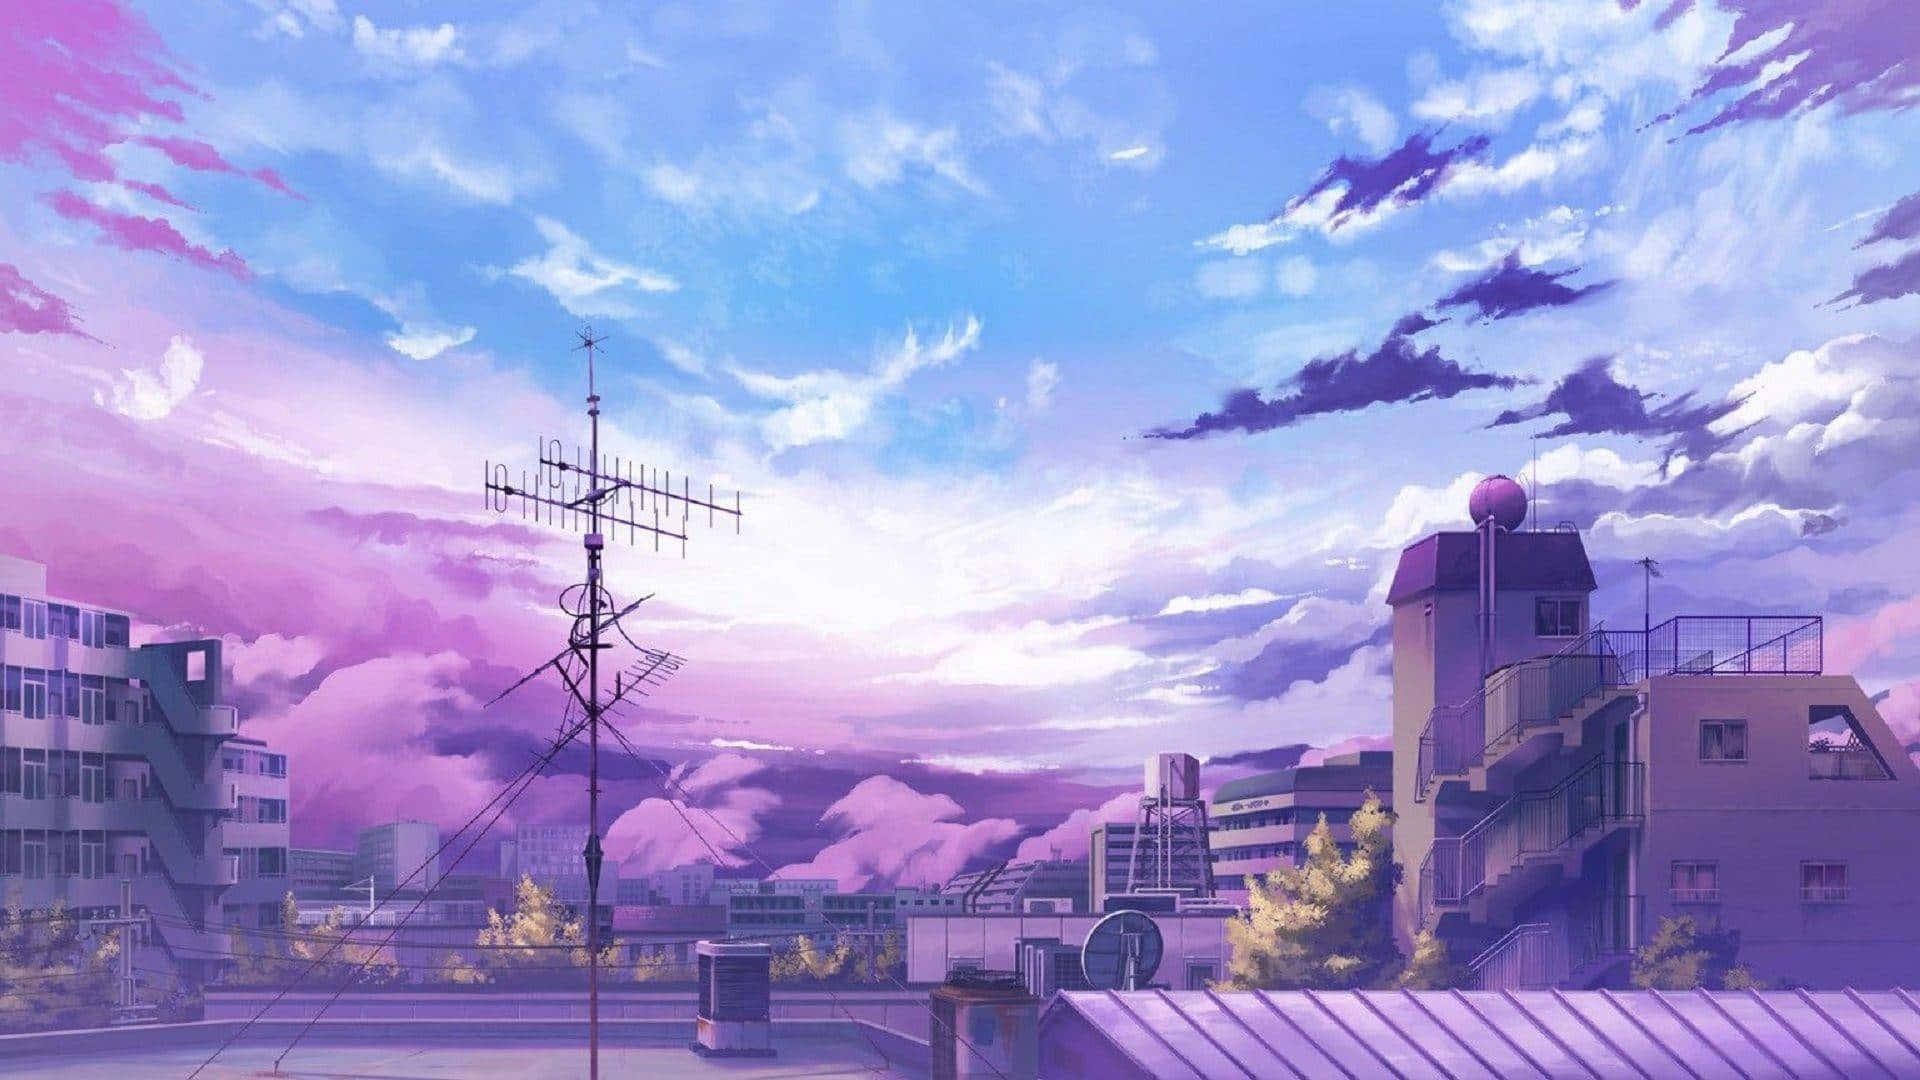 Njutav Den Vackra Anime Landskapet, På Din Datorskärm Eller Mobilskärm! Wallpaper